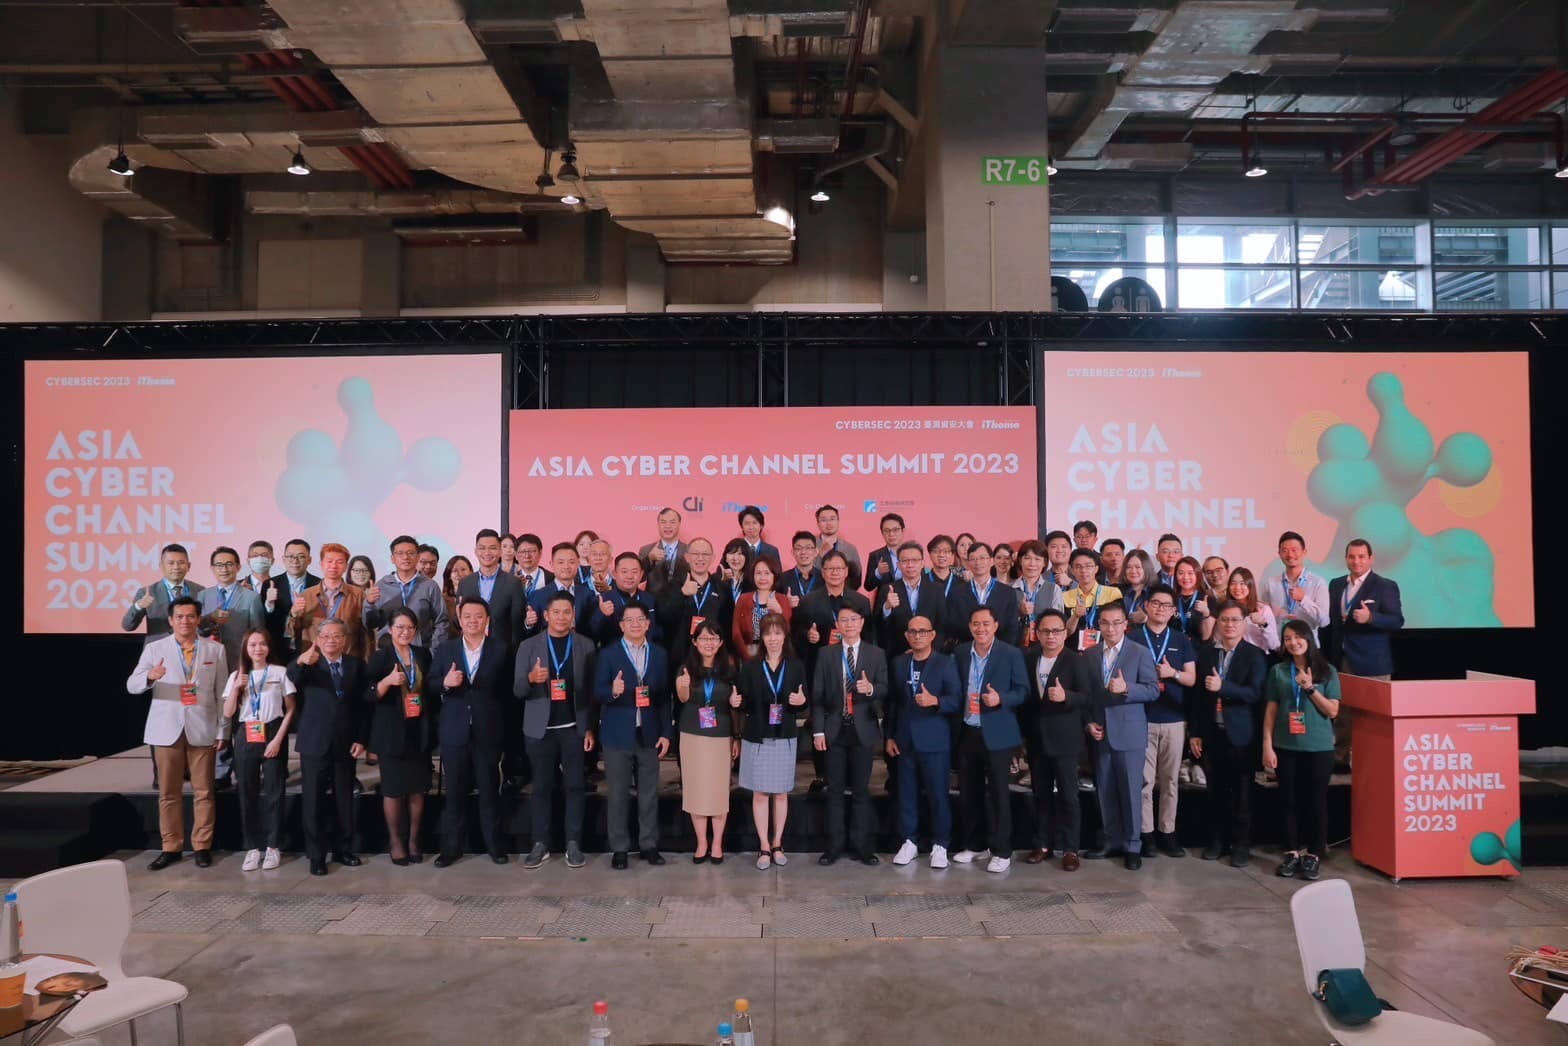 อี้หร้งได้รับเชิญเป็นหนึ่งในพาร์ทเนอร์ทางธุรกิจ แห่ง Asia Cyber Channel Summit 2023 แห่งงาน CYBERSEC 2023 ที่ประเทศไต้หวัน